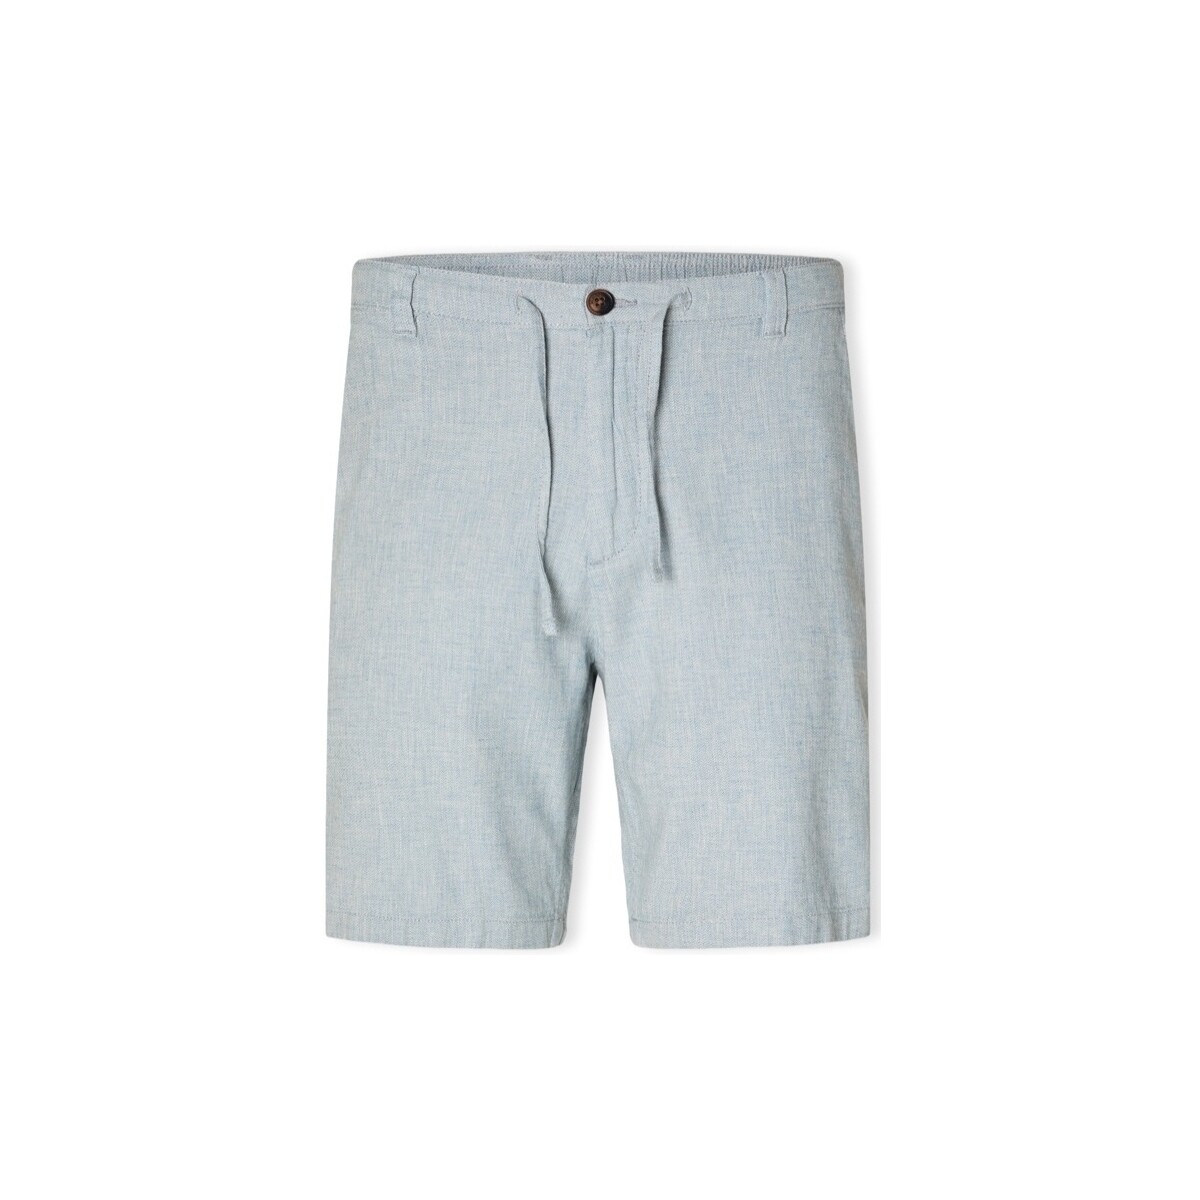 Textiel Heren Korte broeken / Bermuda's Selected Noos Regular-Brody Shorts - Blue Shadow Blauw